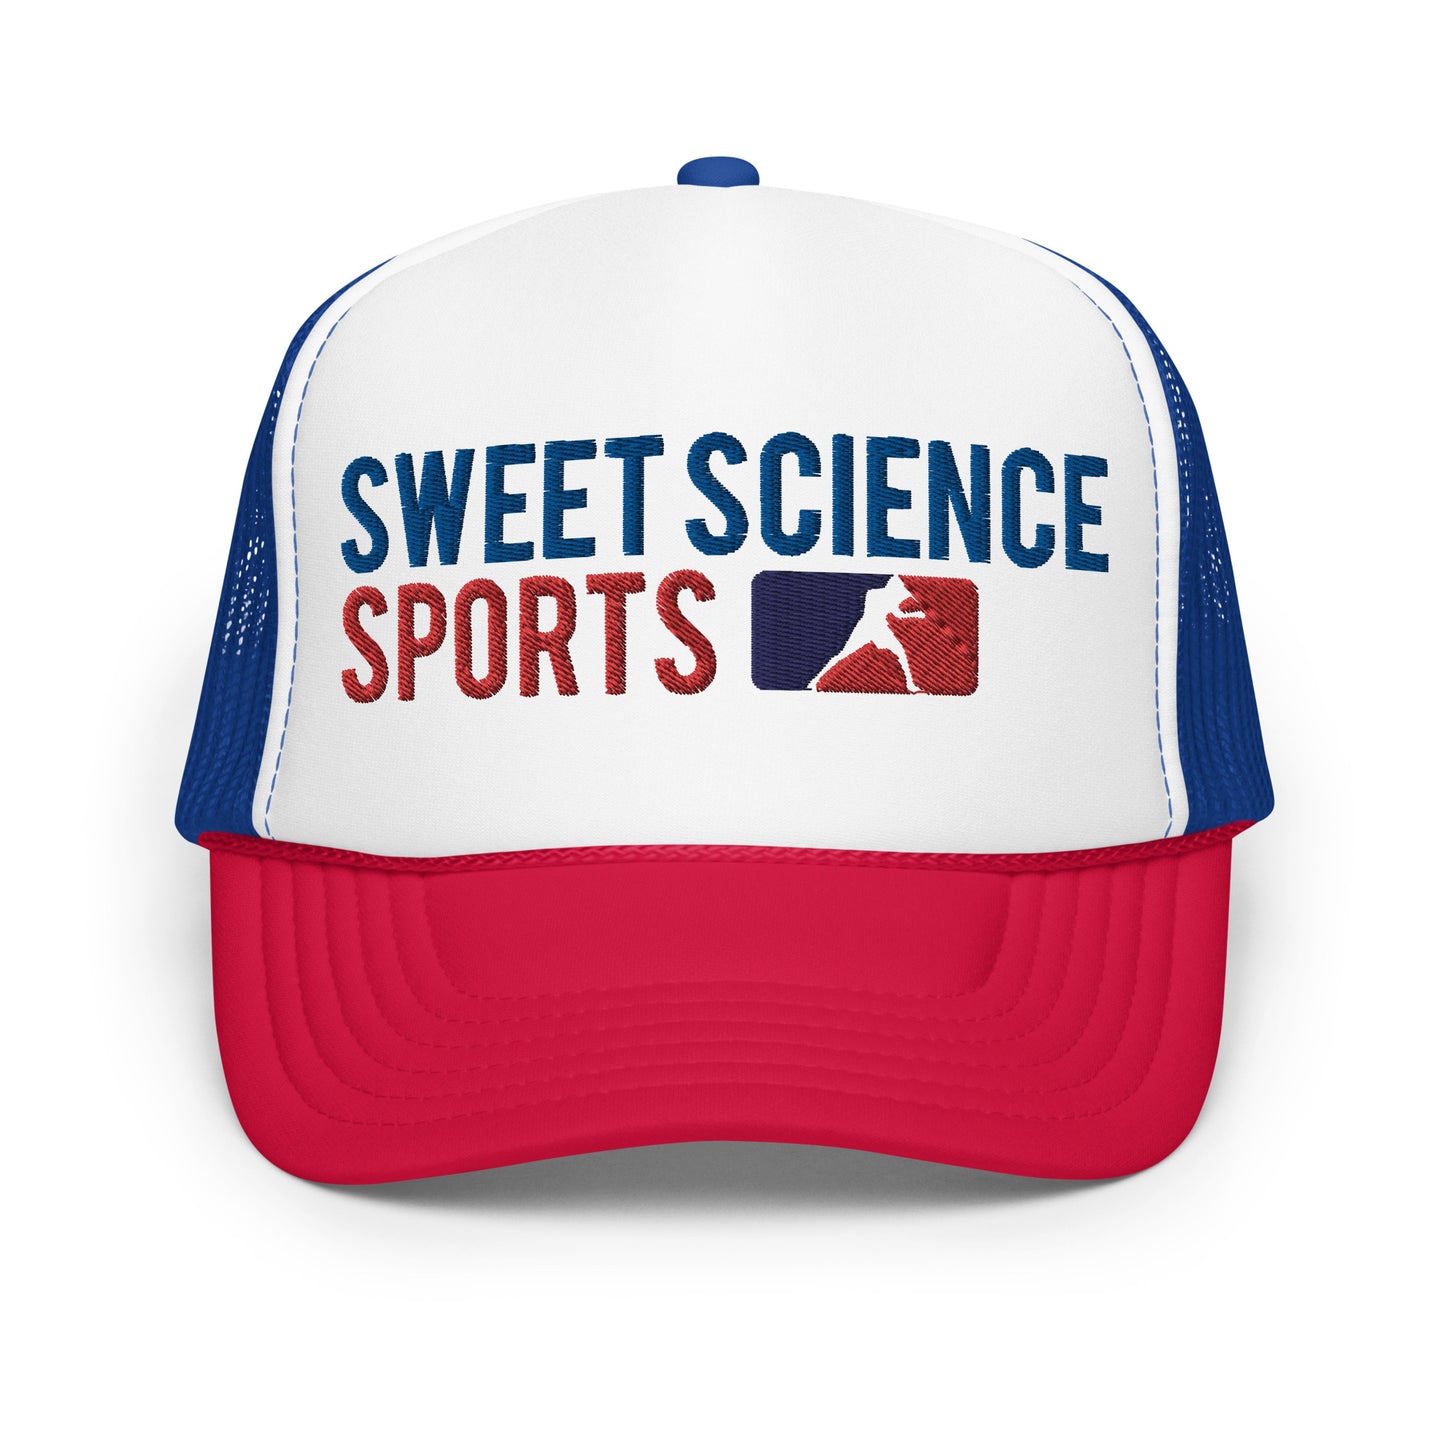 Sweet Science Sports Foam trucker hat